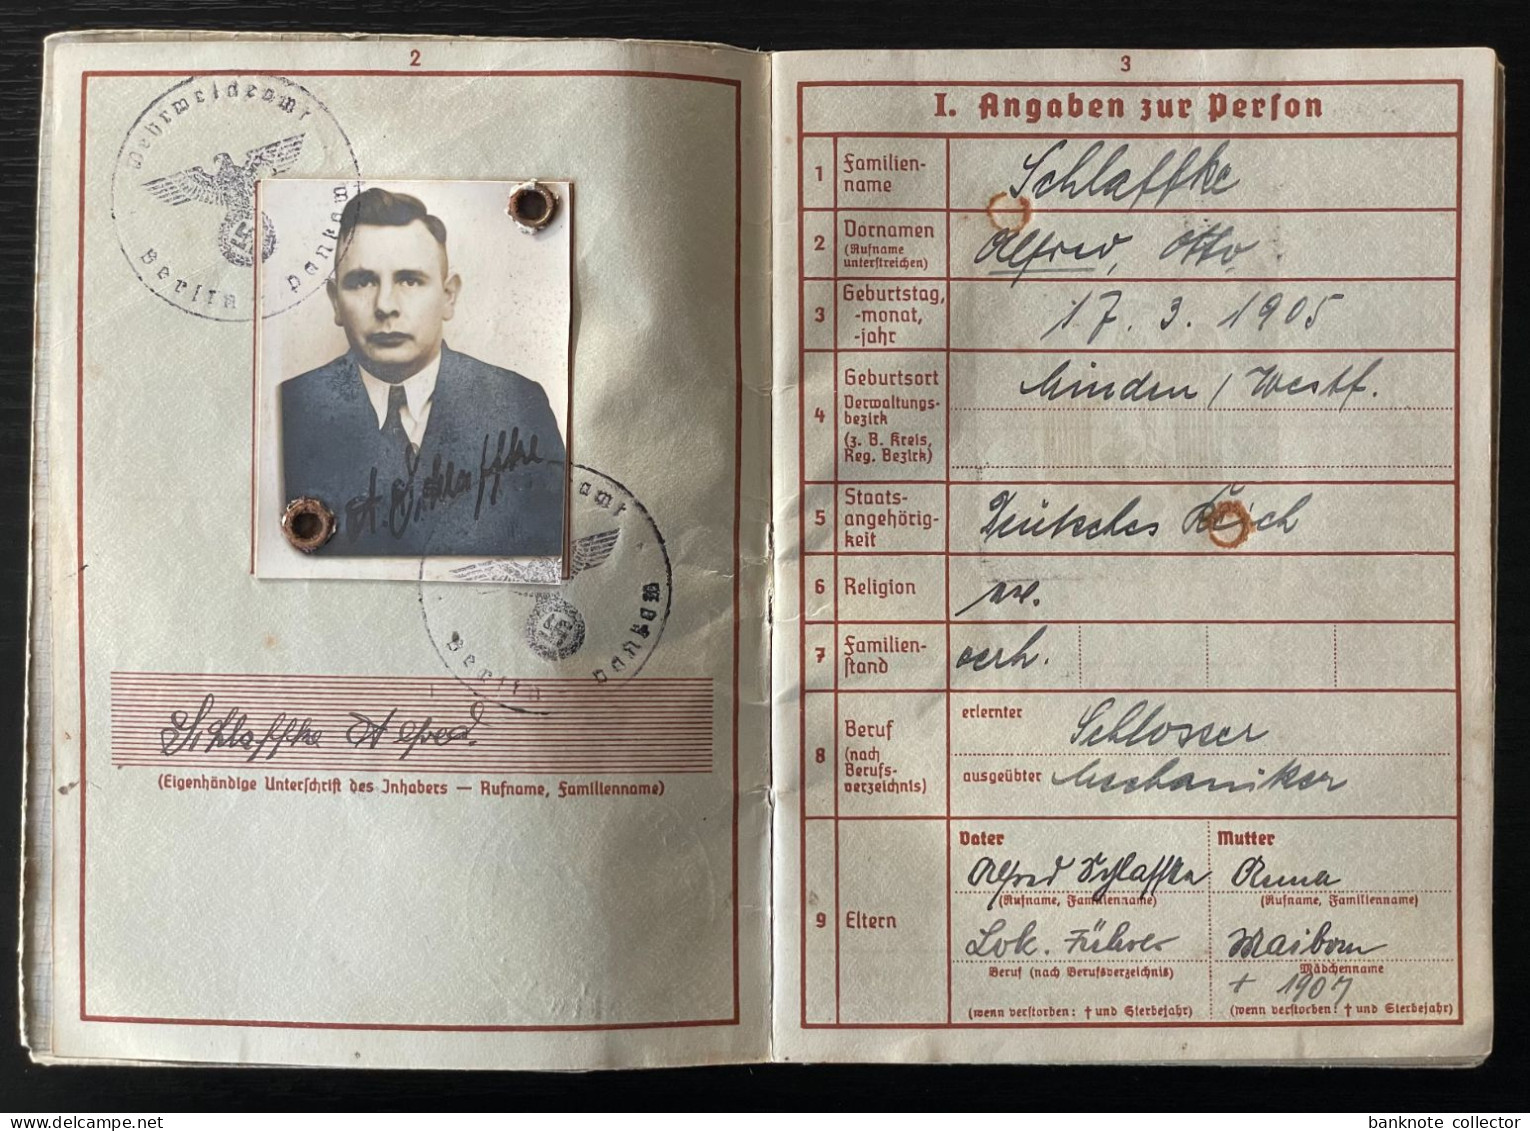 Deutschland, Germany - Deutsches Reich - NSDAP Ausweis mit zwei Anhängen & Wehrpass & .... - 1937 !